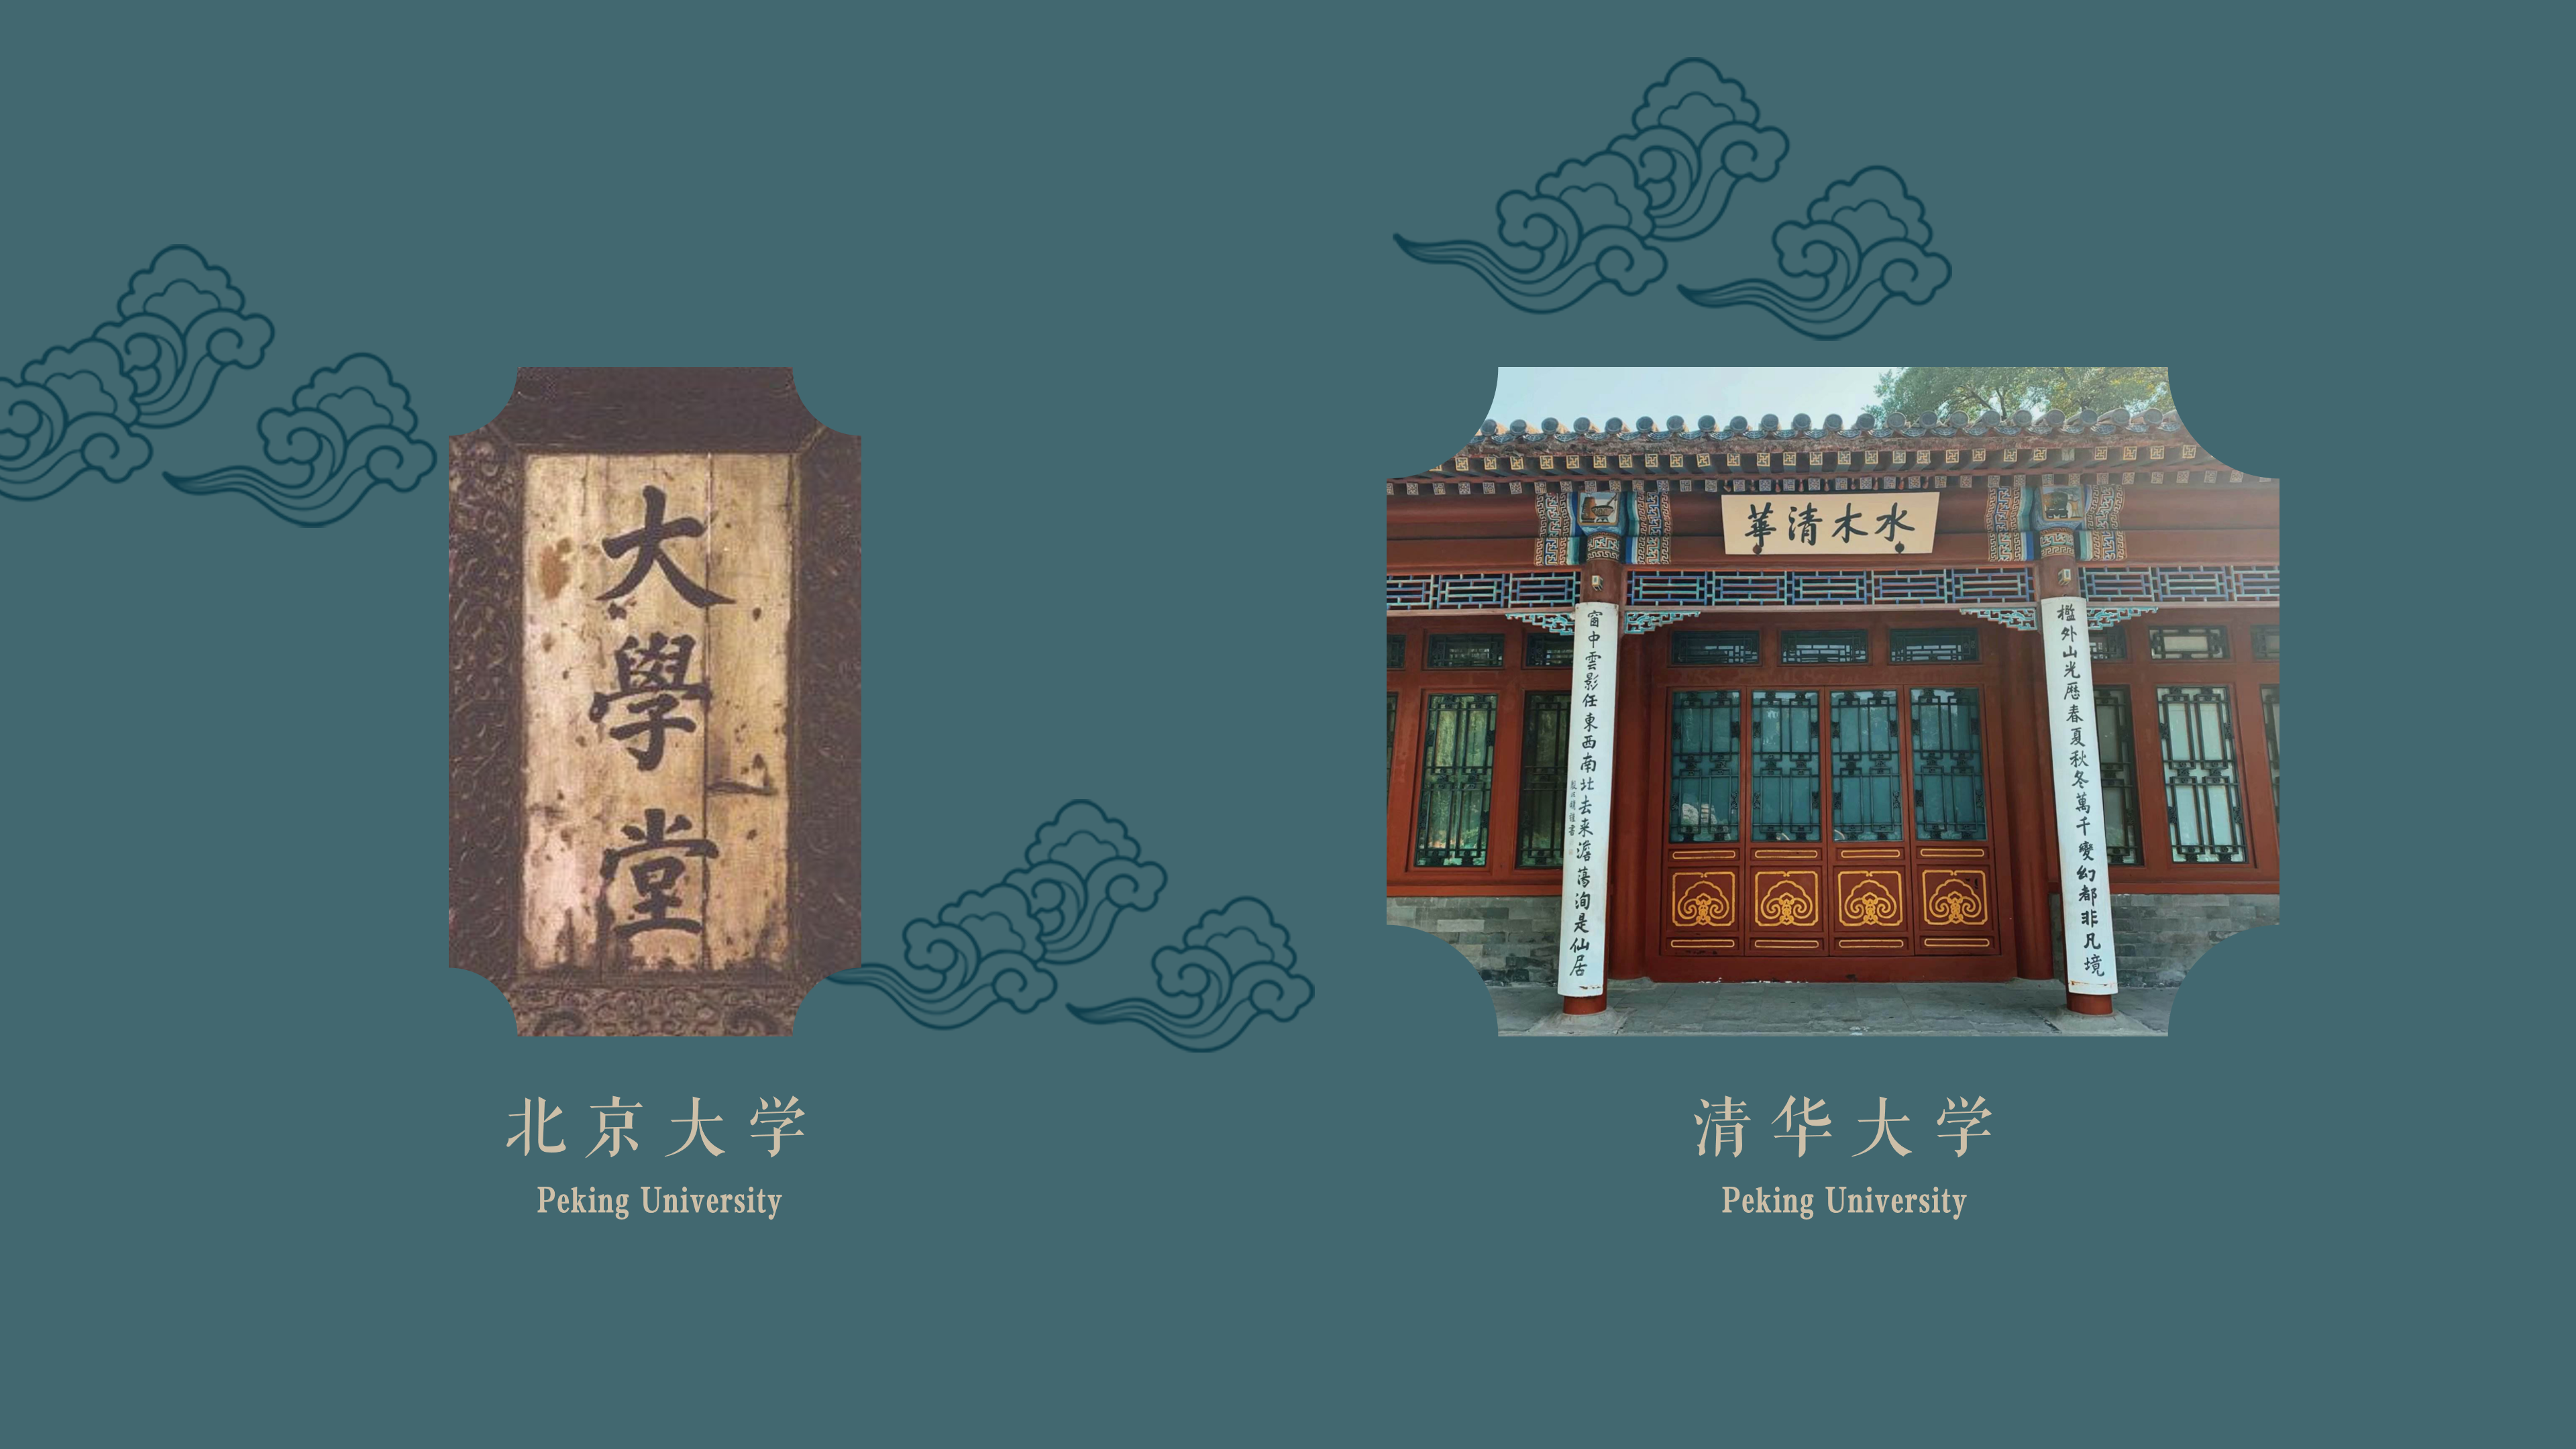 川蓓教育公司北京傳統文化產品介紹-網站用_23